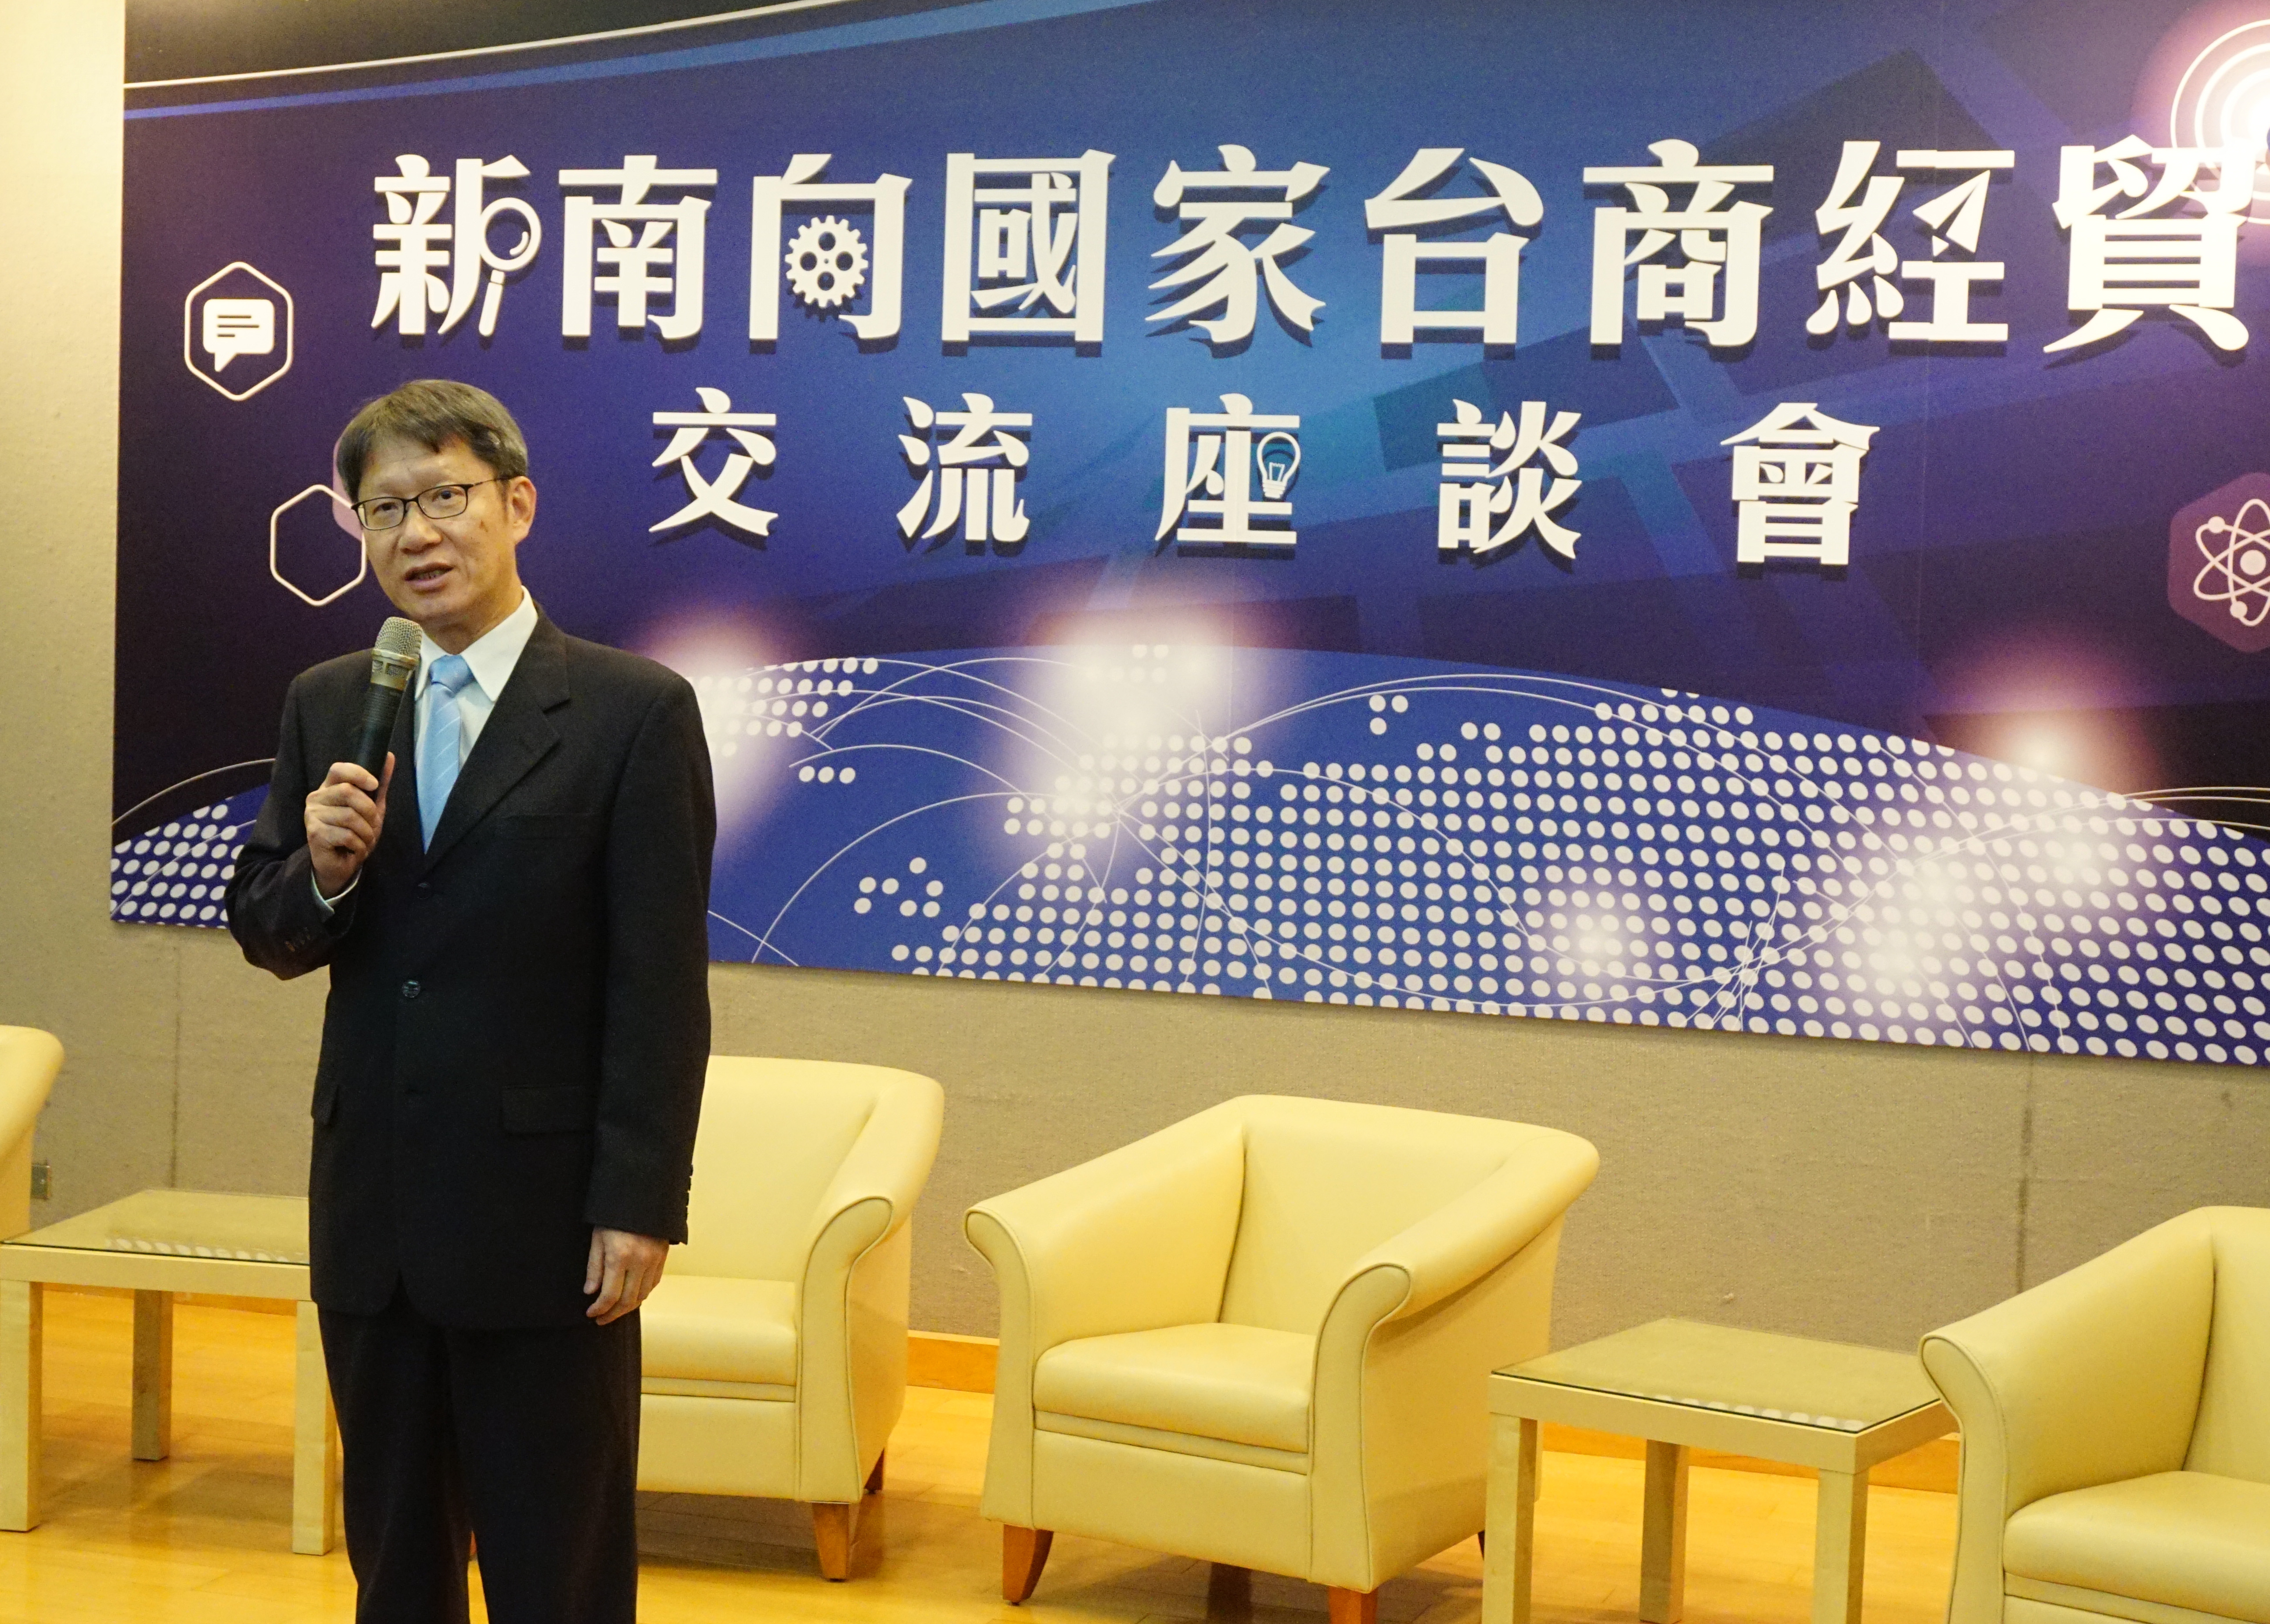 新北市副市長葉惠青出席新南向國家台商經貿交流座談會並致詞